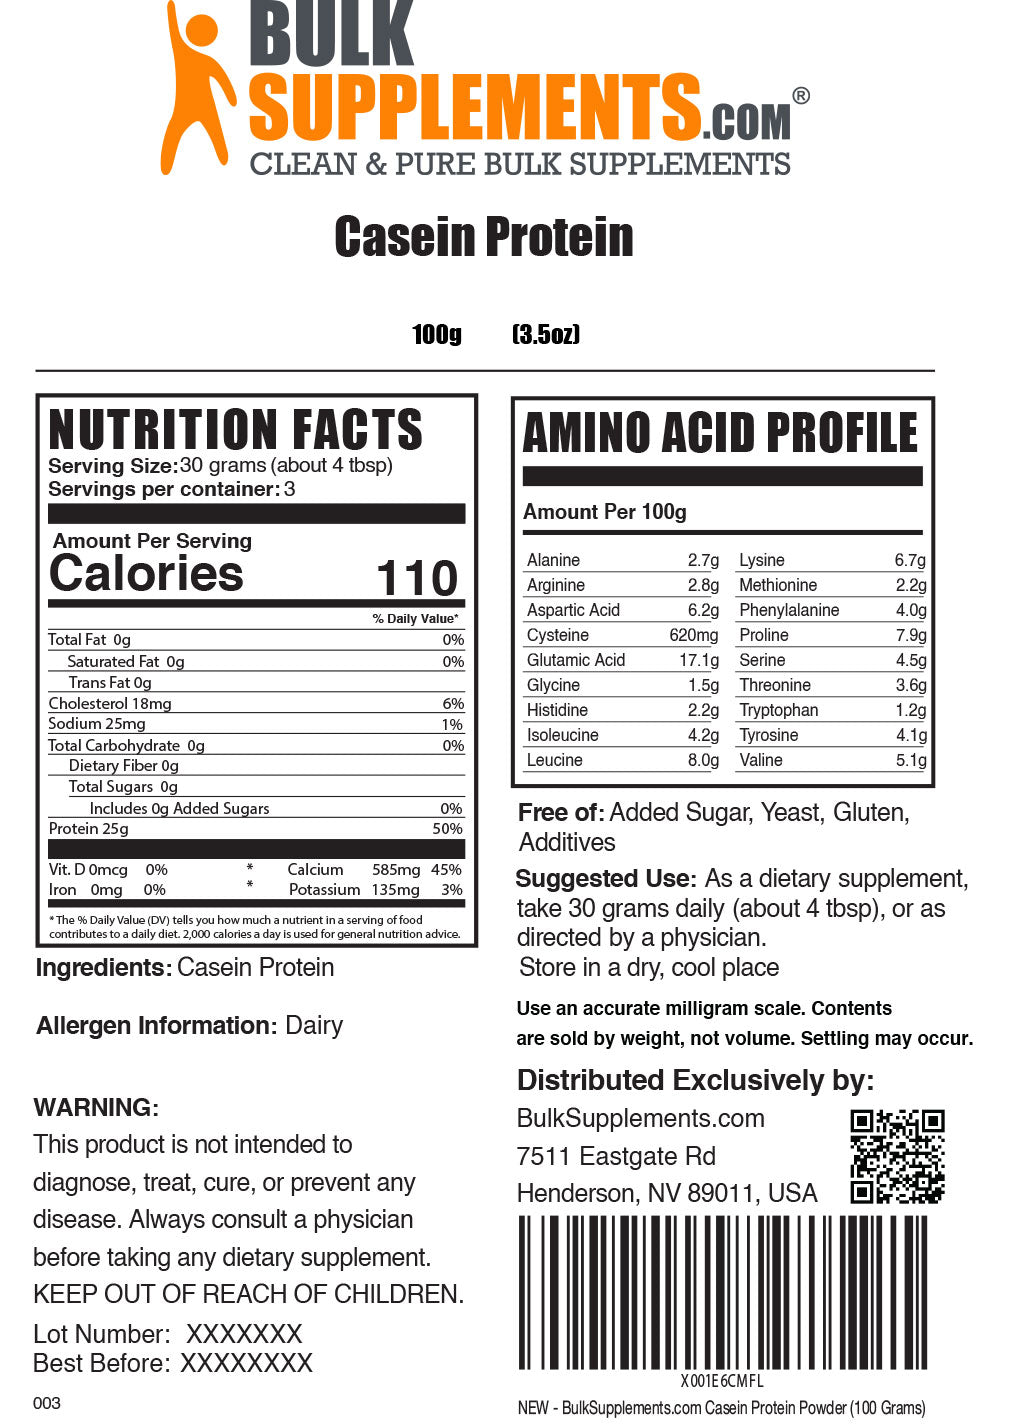 100g casein protein powder supplement facts label